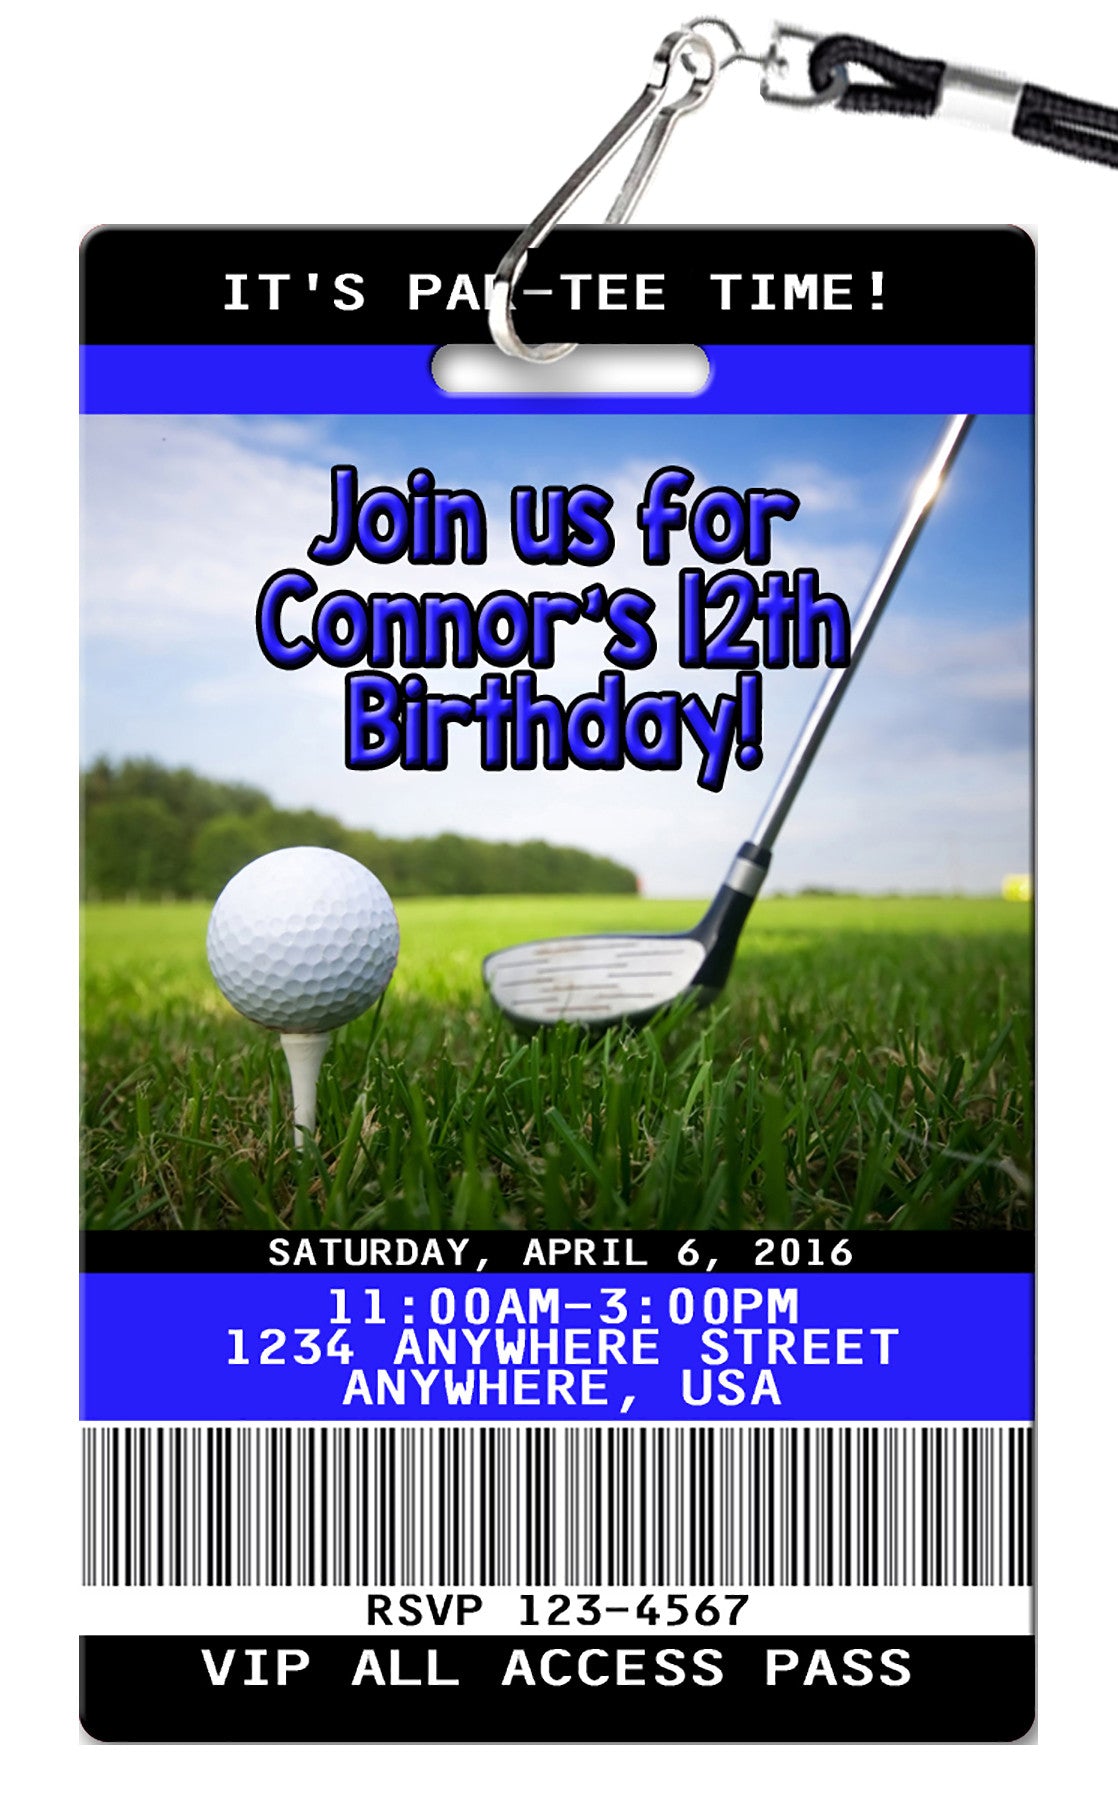 glow-golf-invitation-printable-mini-golf-birthday-invite-etsy